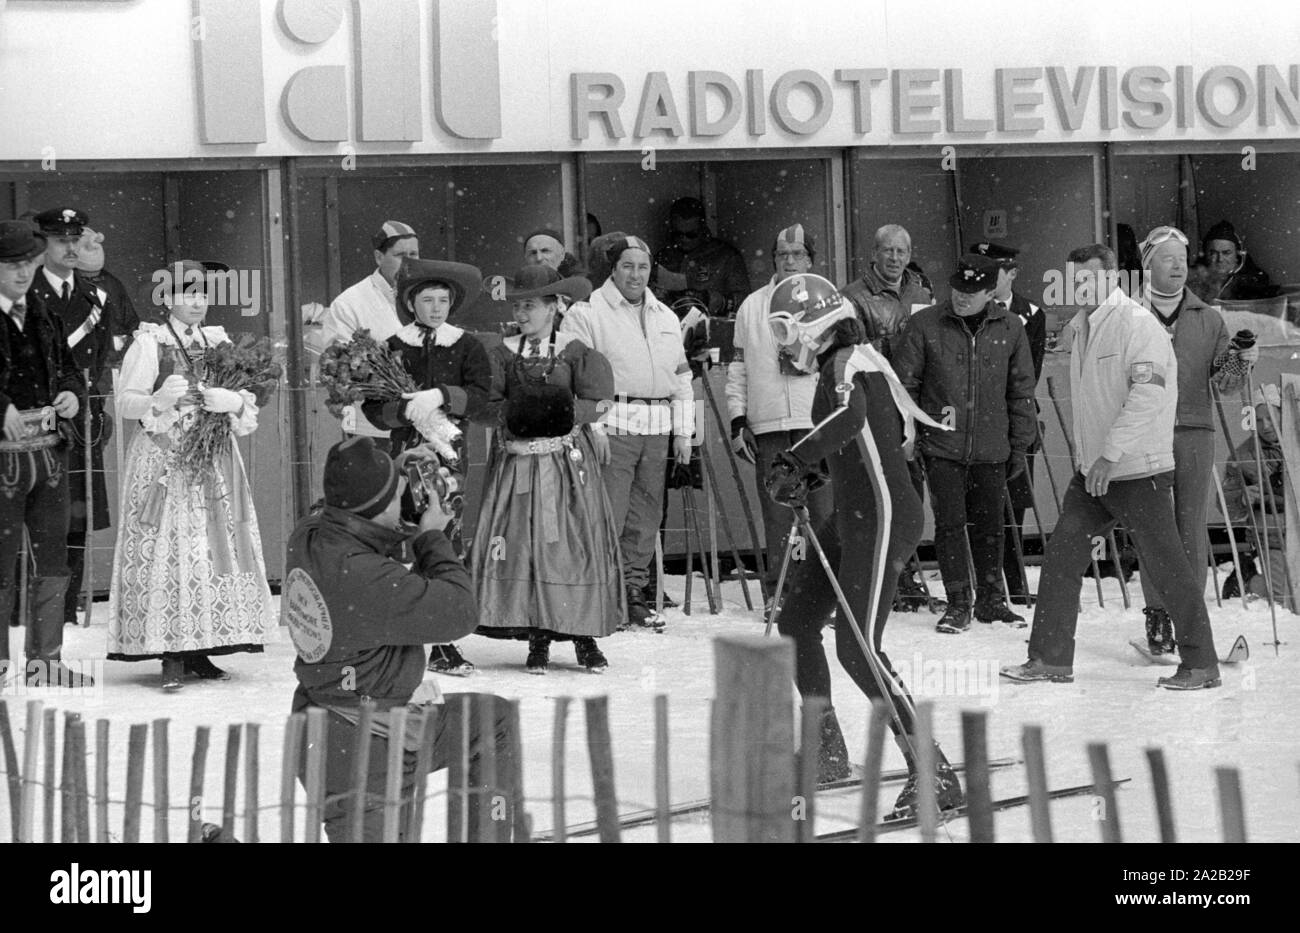 Championnats du Monde de Ski alpin a eu lieu à Val Gardena entre 7.2.1970 et 15.2.1970, et il avait été la seule Coupe du monde jusqu'à présent, les résultats ont été inclus dans la Coupe du Monde de Ski Alpin.à l'arrière-plan, un vestiaire. Il a été possible de rendre compte en direct de ici. Au premier plan, les membres d'un groupe de costumes, ainsi que des officiers de police, les athlètes et les journalistes. Banque D'Images